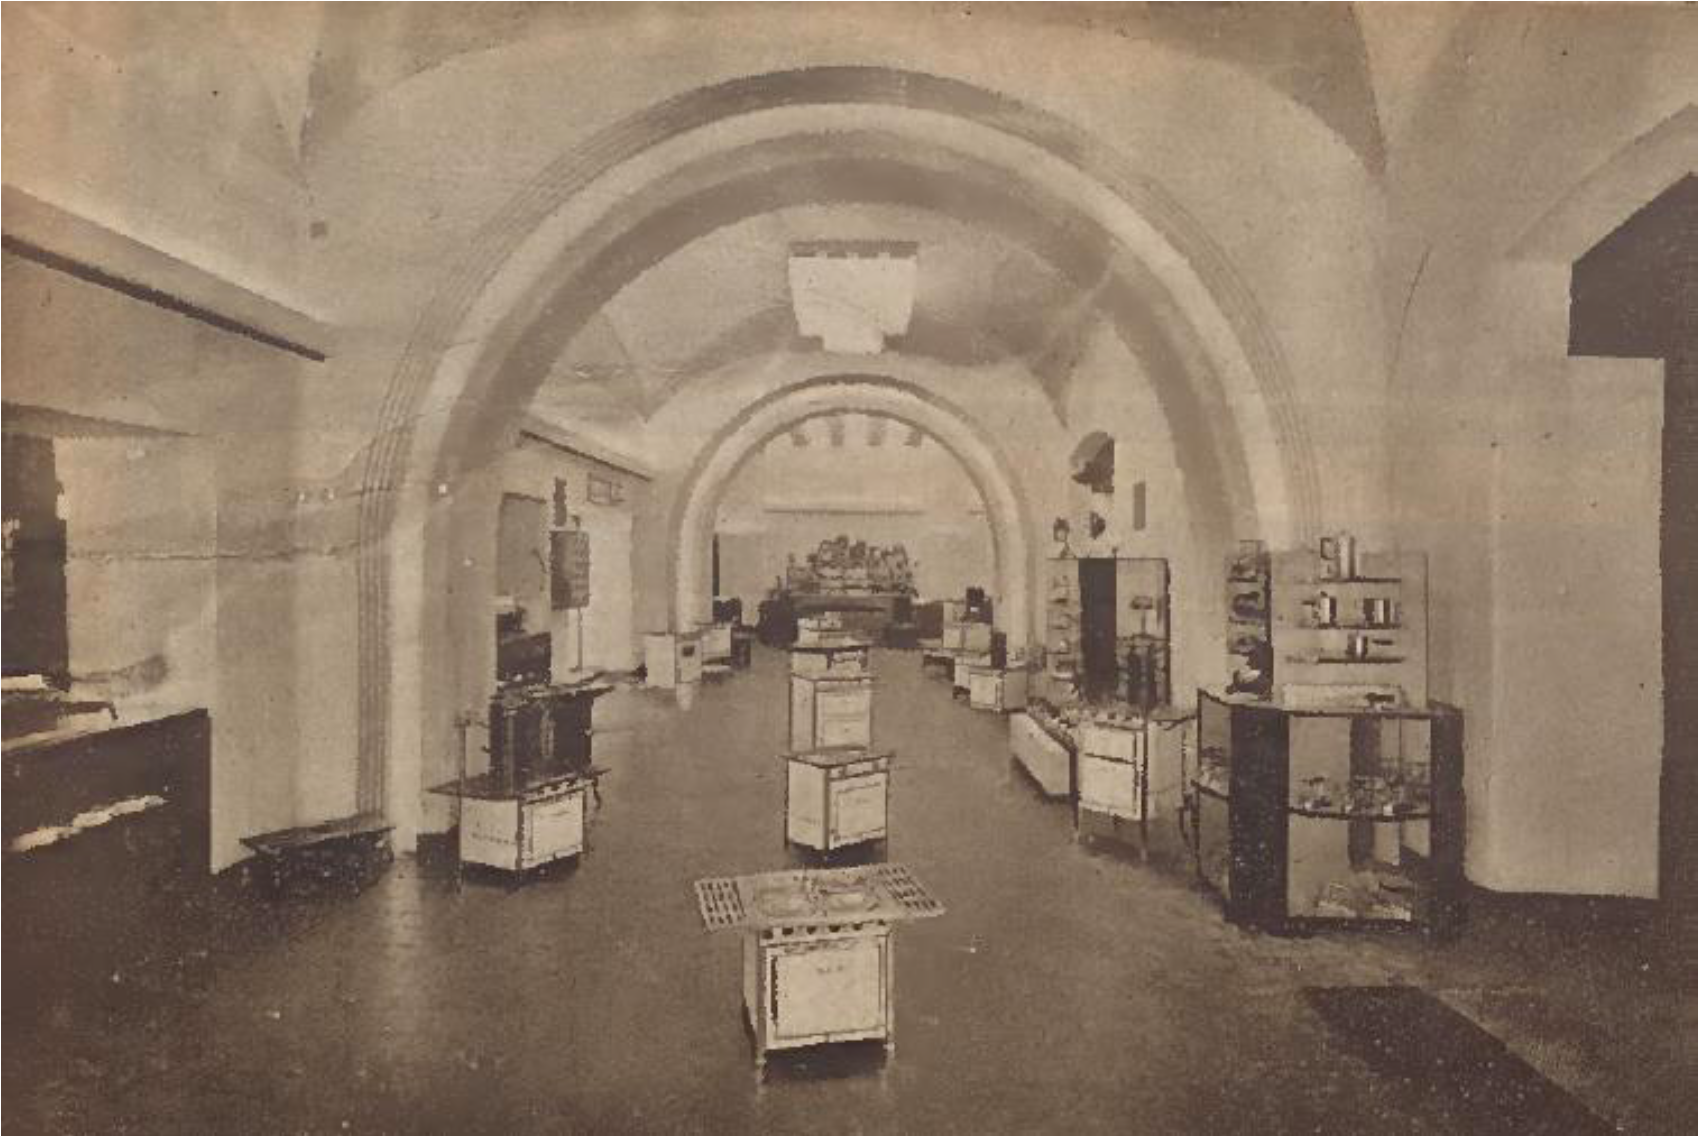 Figure 4: Warehouse exhibition in Boavista (Lisbon, 1934). Source: O amigo do lar, November 1934, 8.